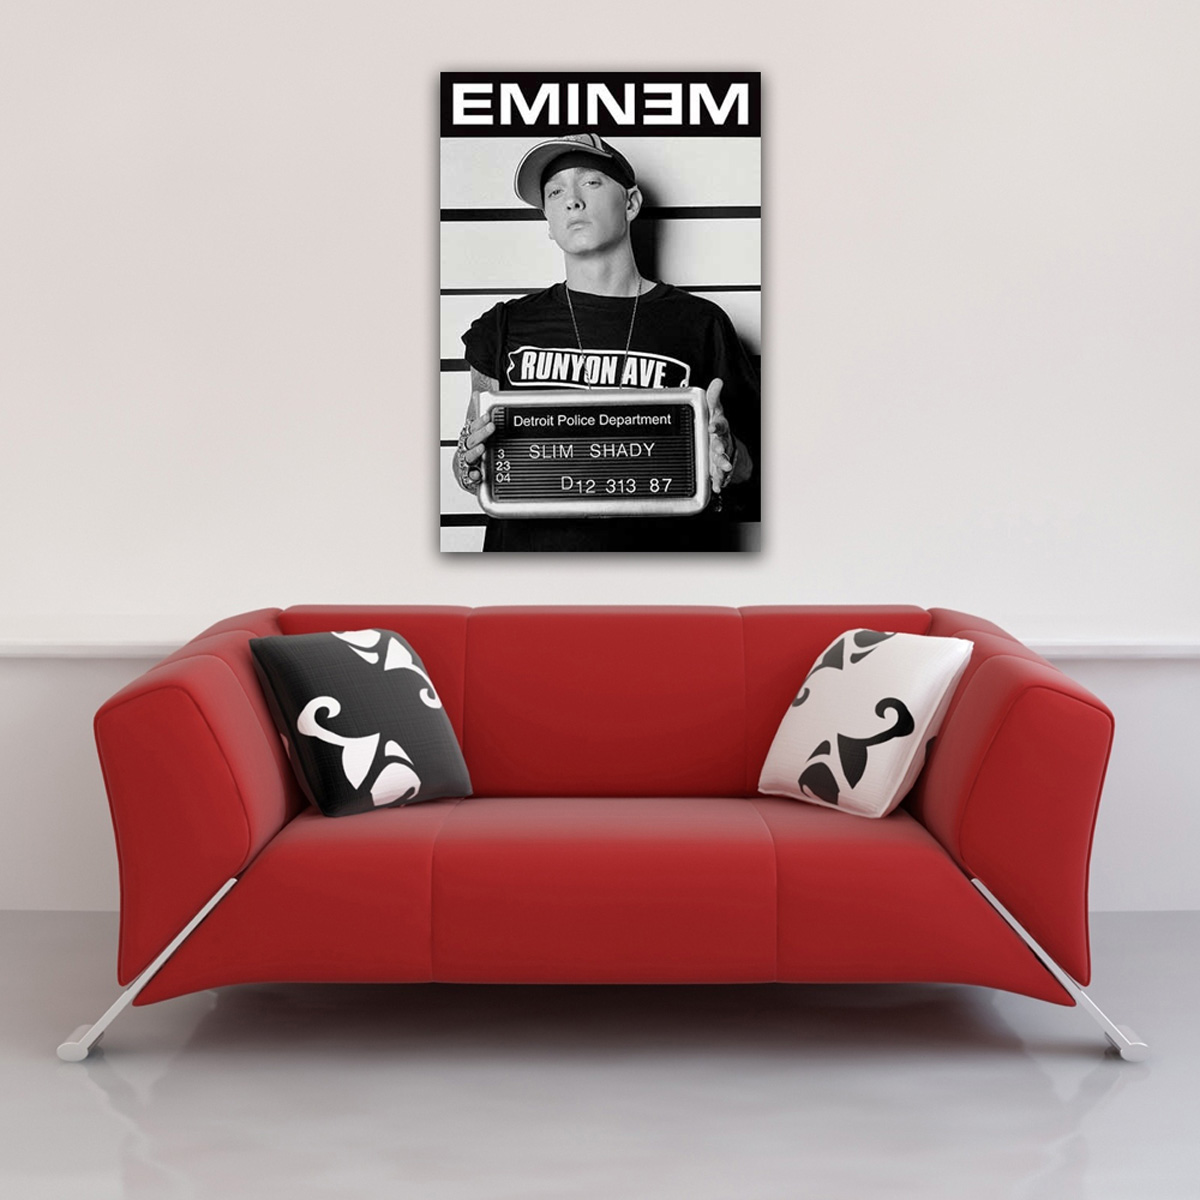 Eminem - Mugshot